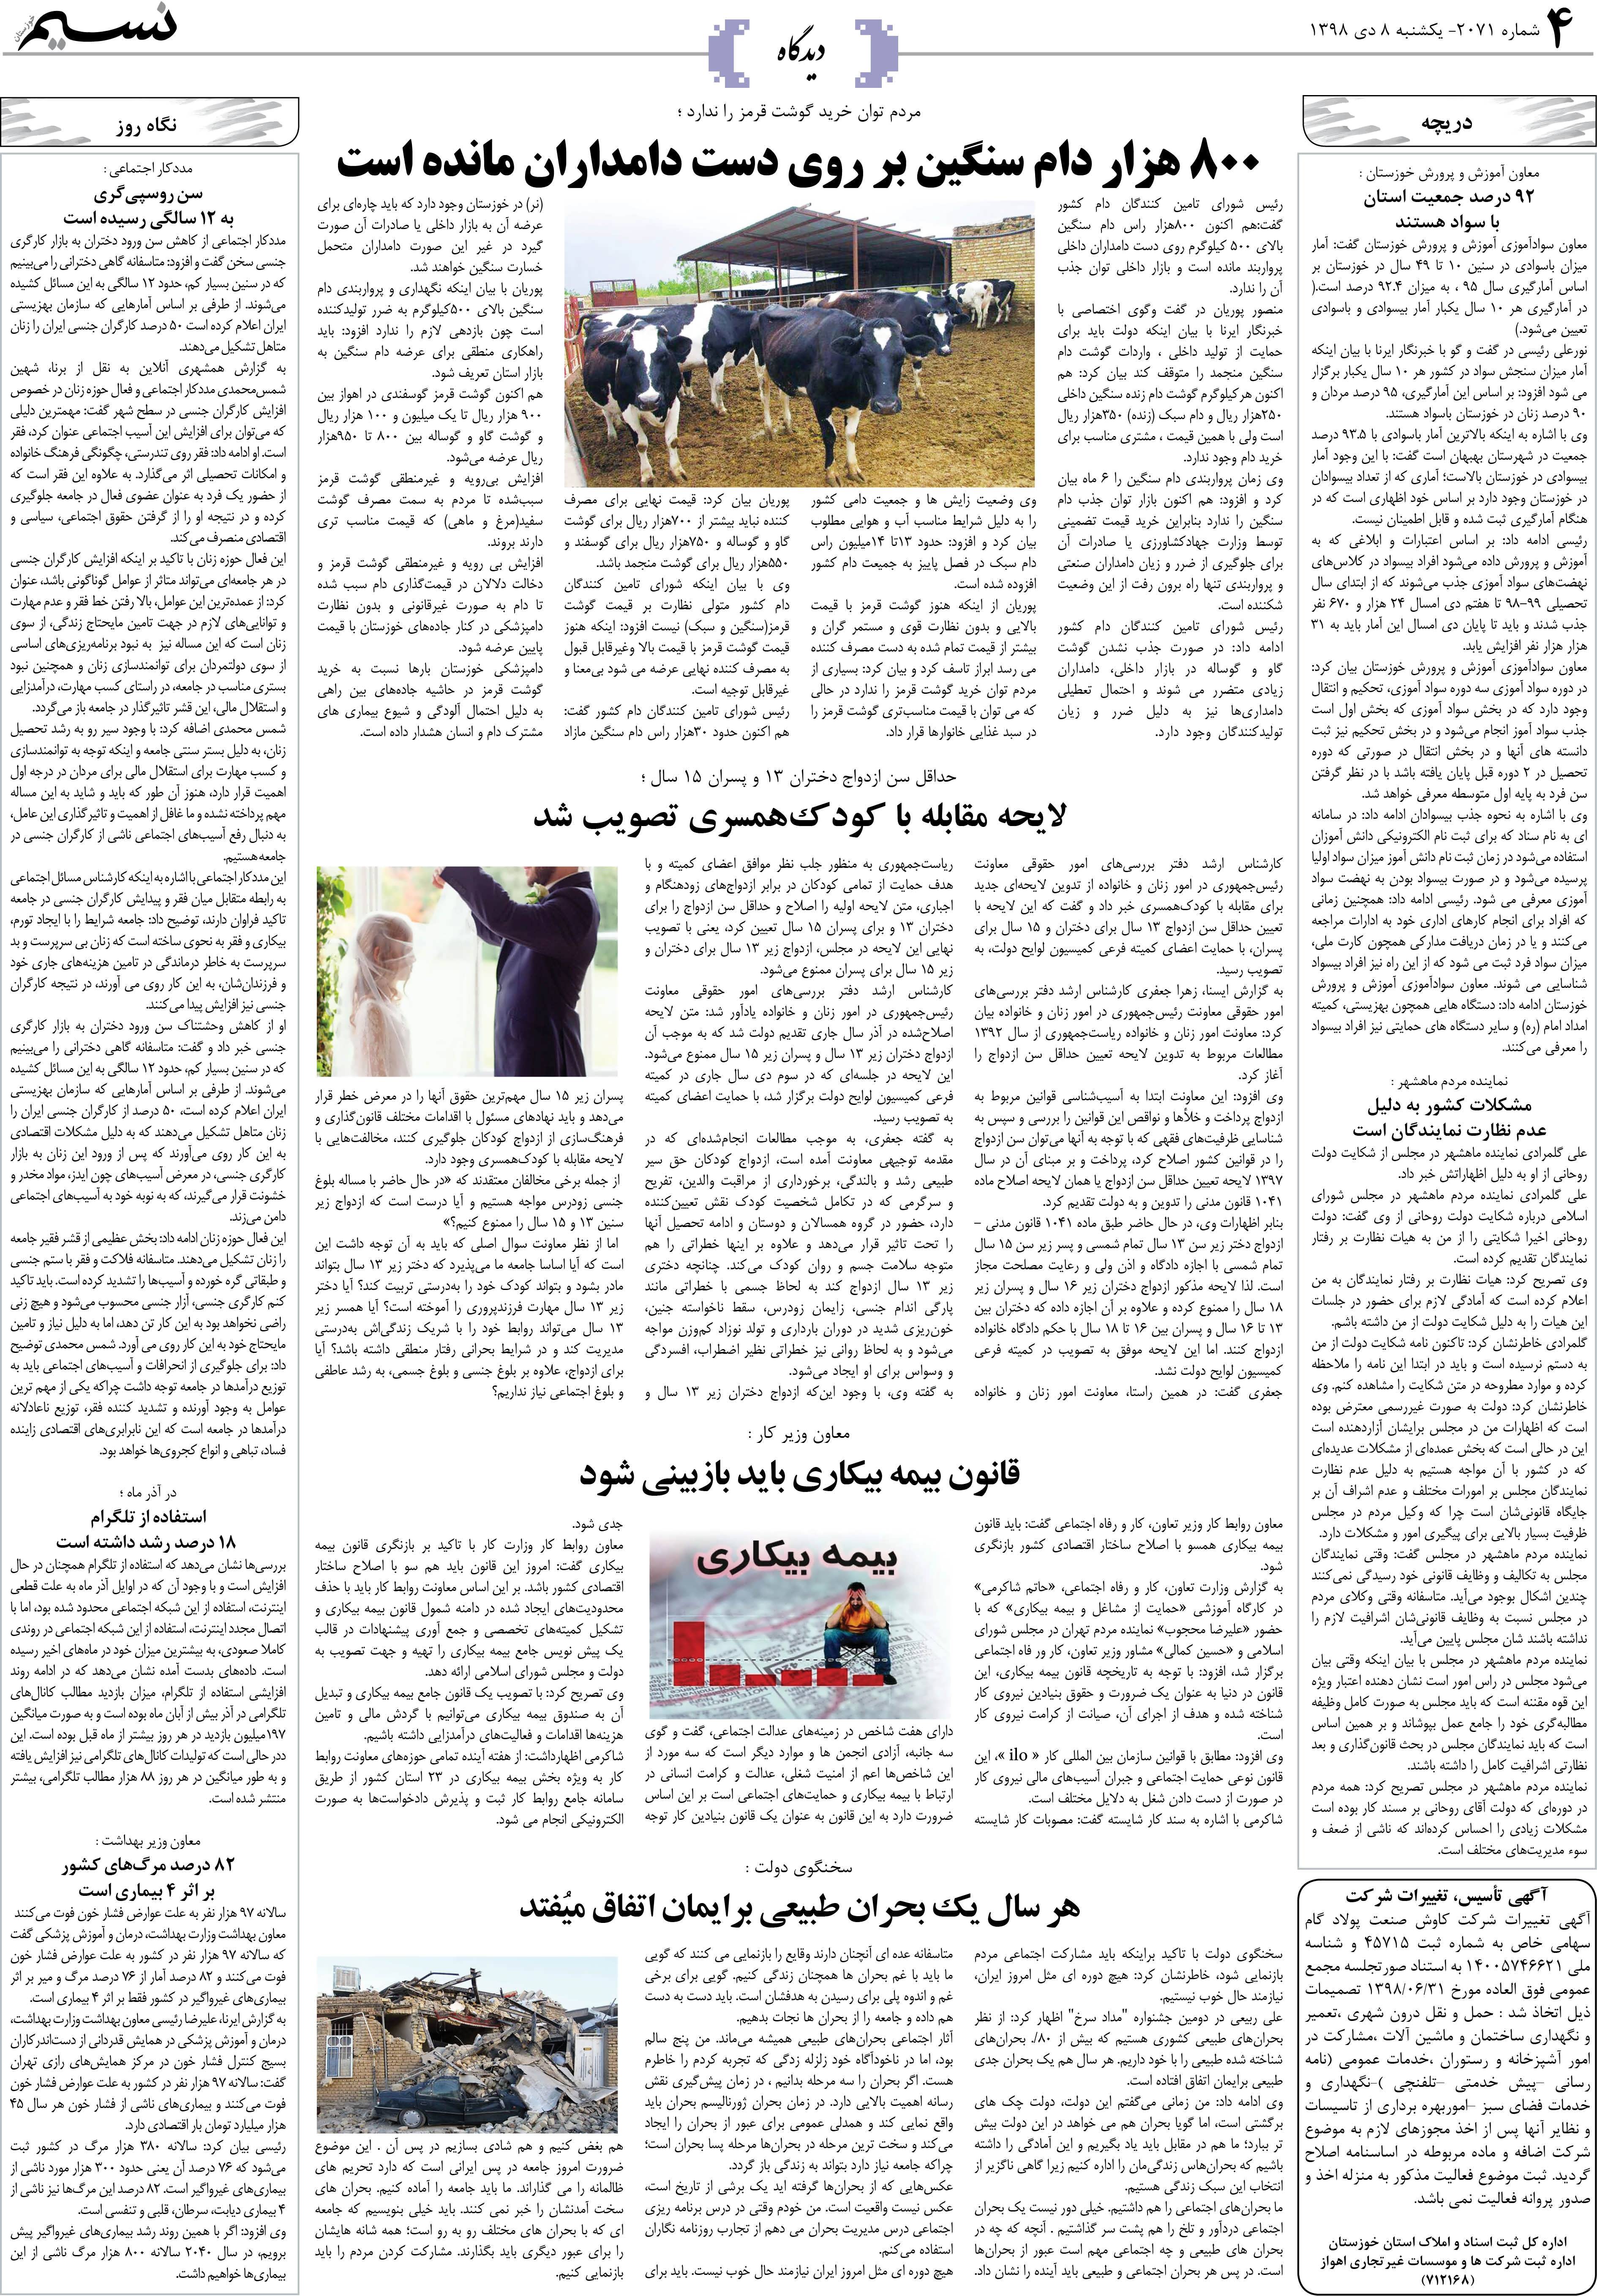 صفحه دیدگاه روزنامه نسیم شماره 2071